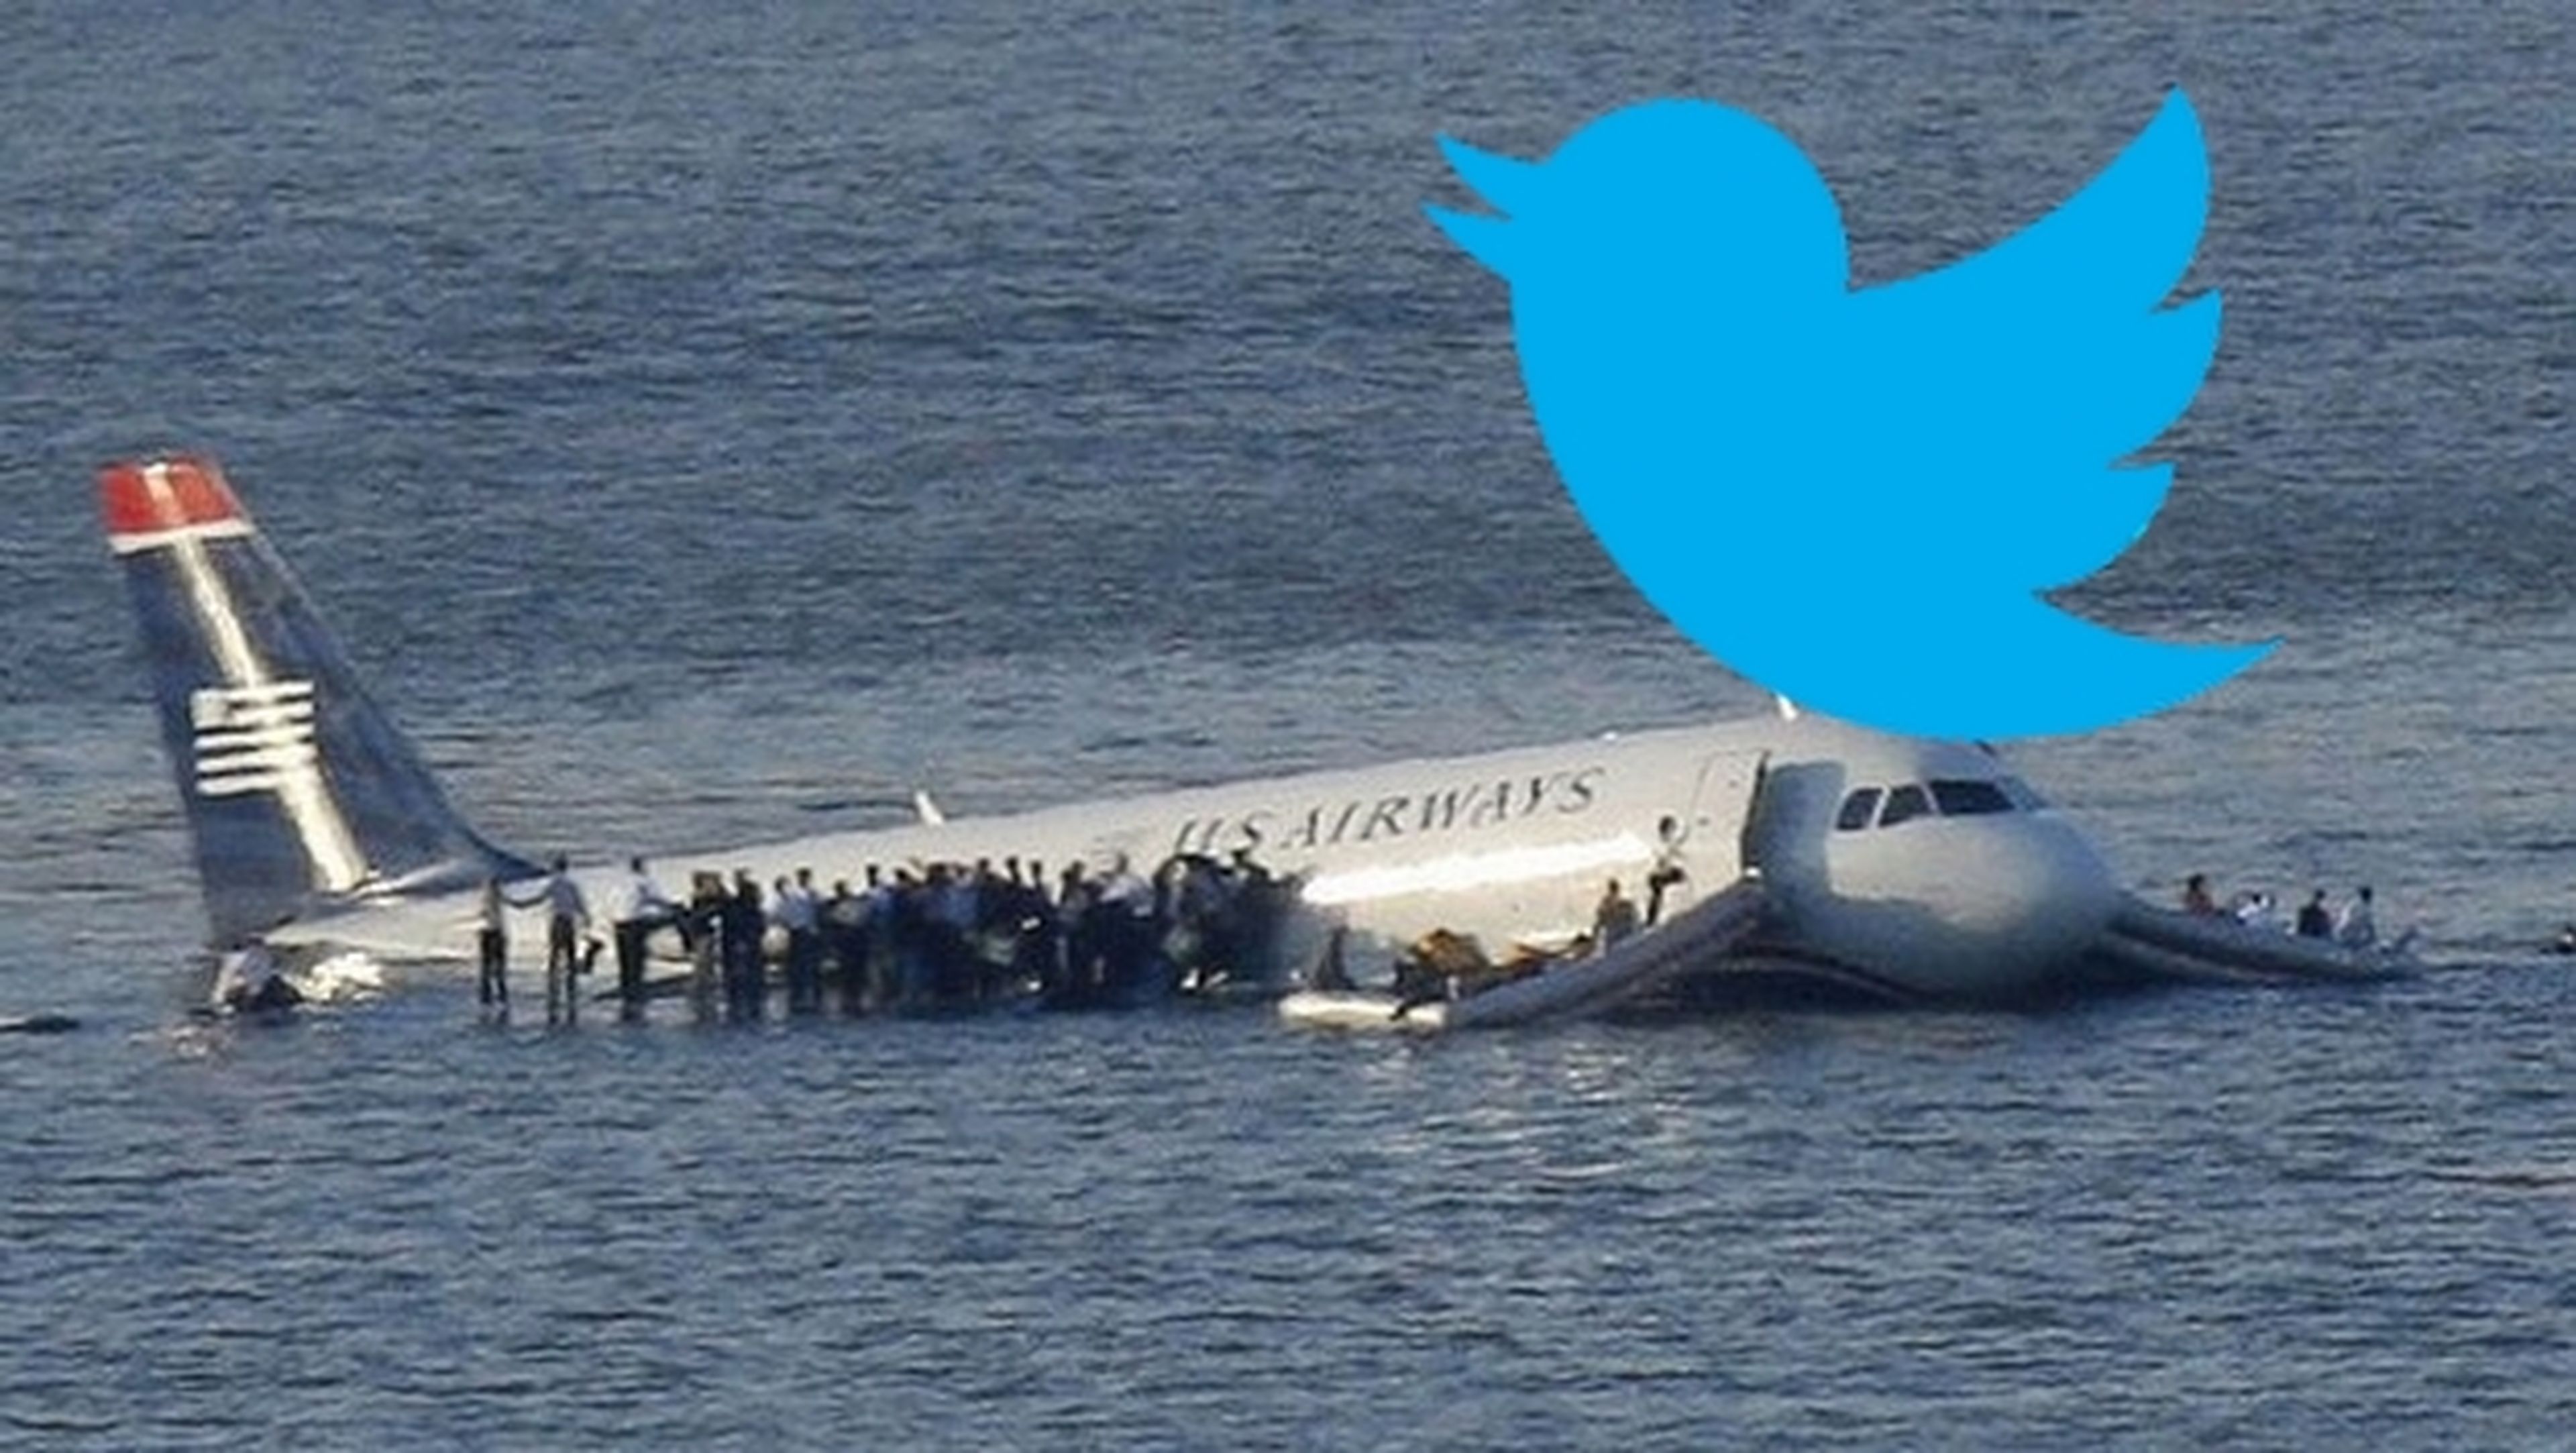 La aerolínea U.S. Airways responde con una imagen porno a las quejas de una pasajera en Twitter.